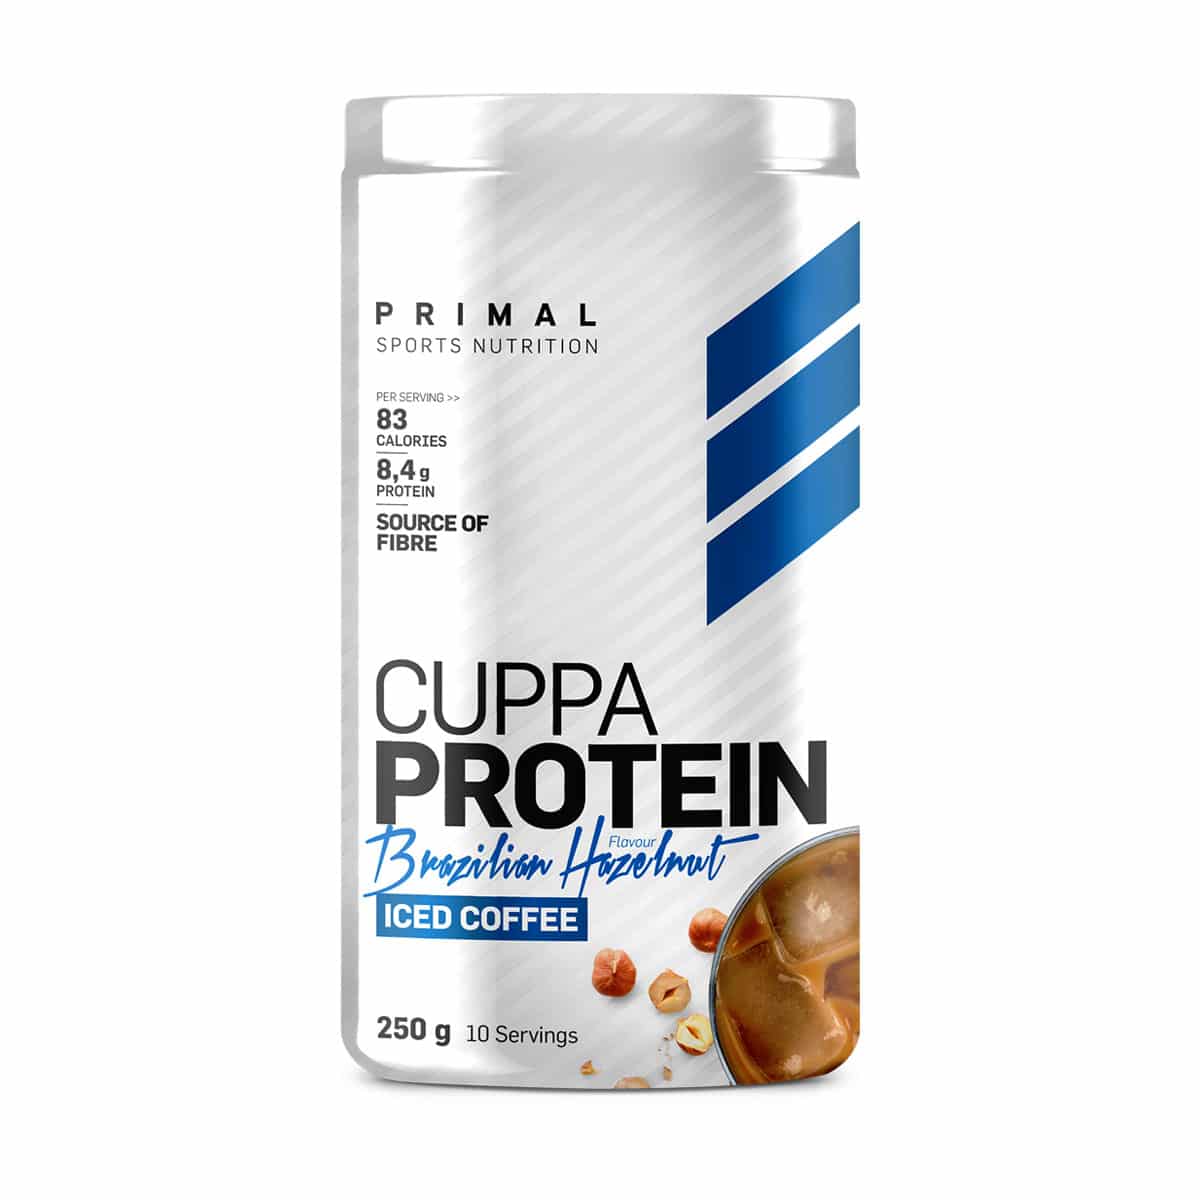 Primal Cuppa Protein Brazilian Hazelnut - 250g